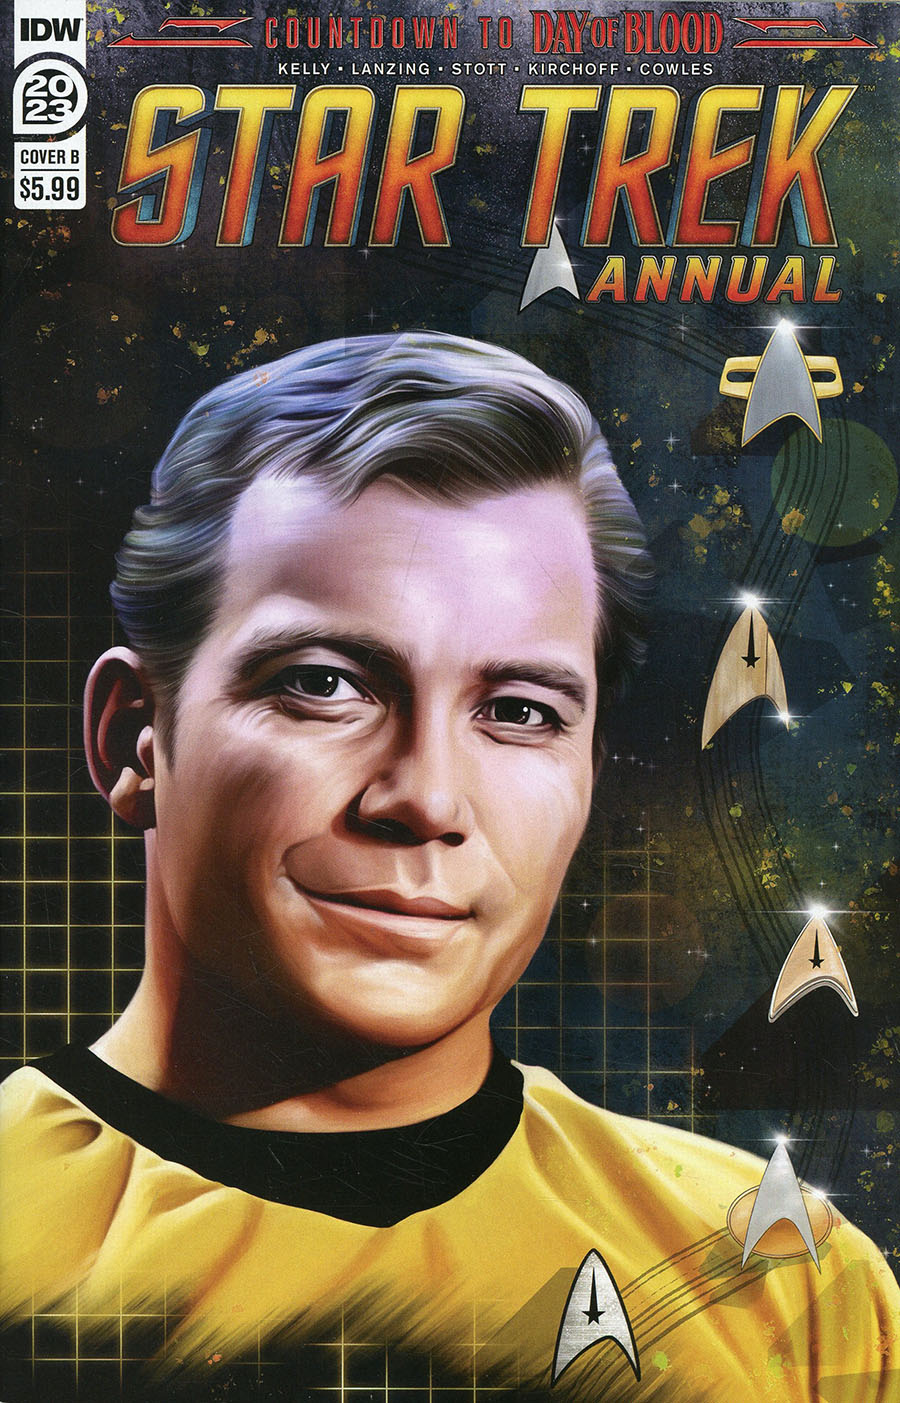 Star Trek (IDW) Vol 2 Annual 2023 #1 Cover B Variant Steffi Hochreigl Cover